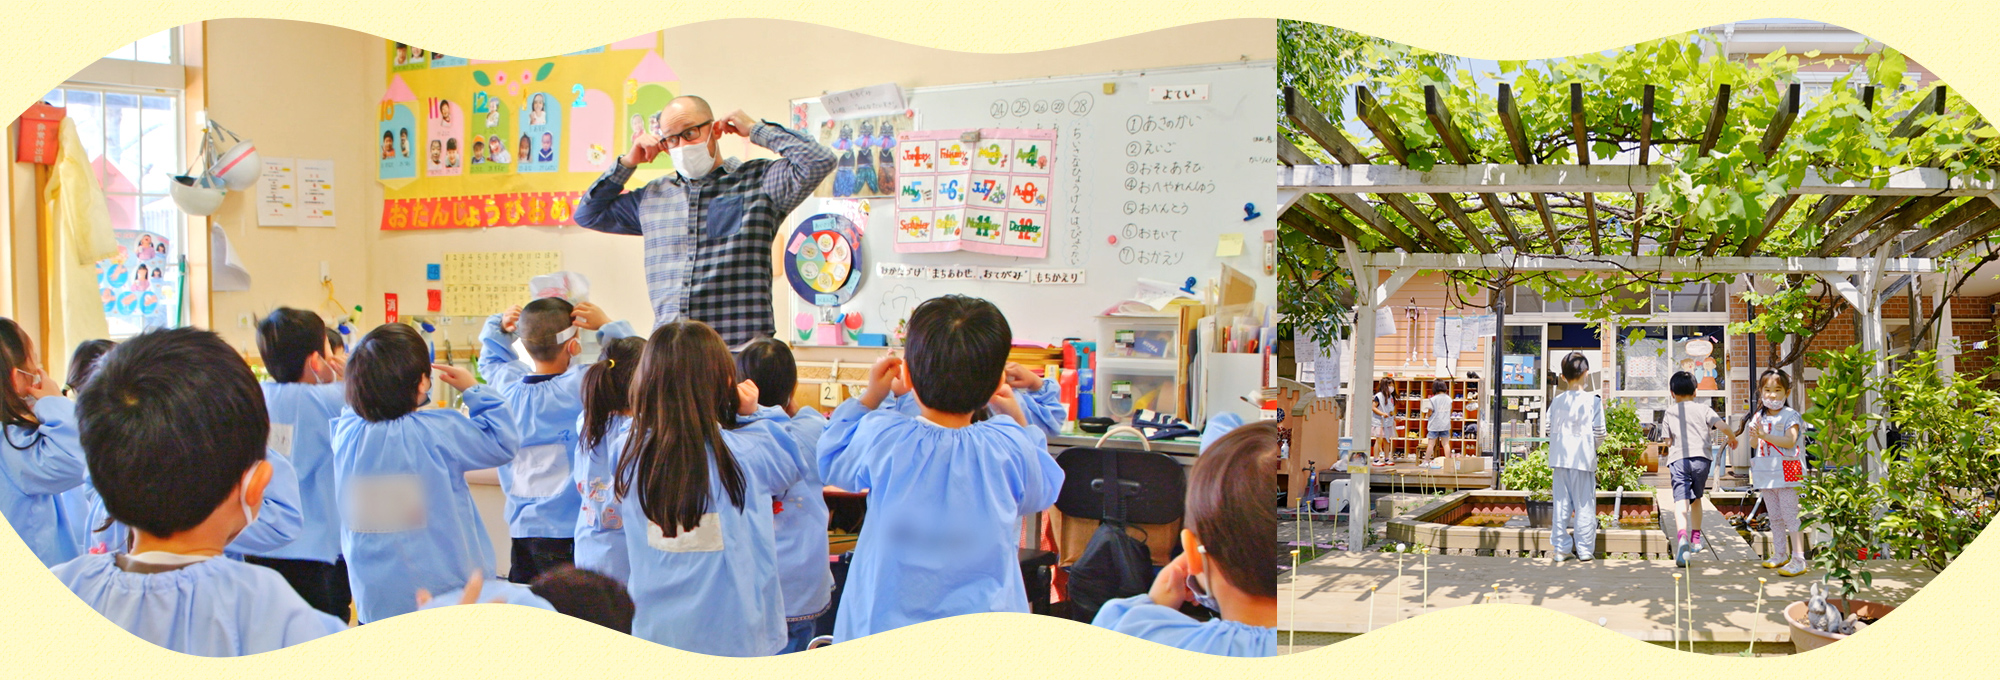 板橋富士見幼稚園